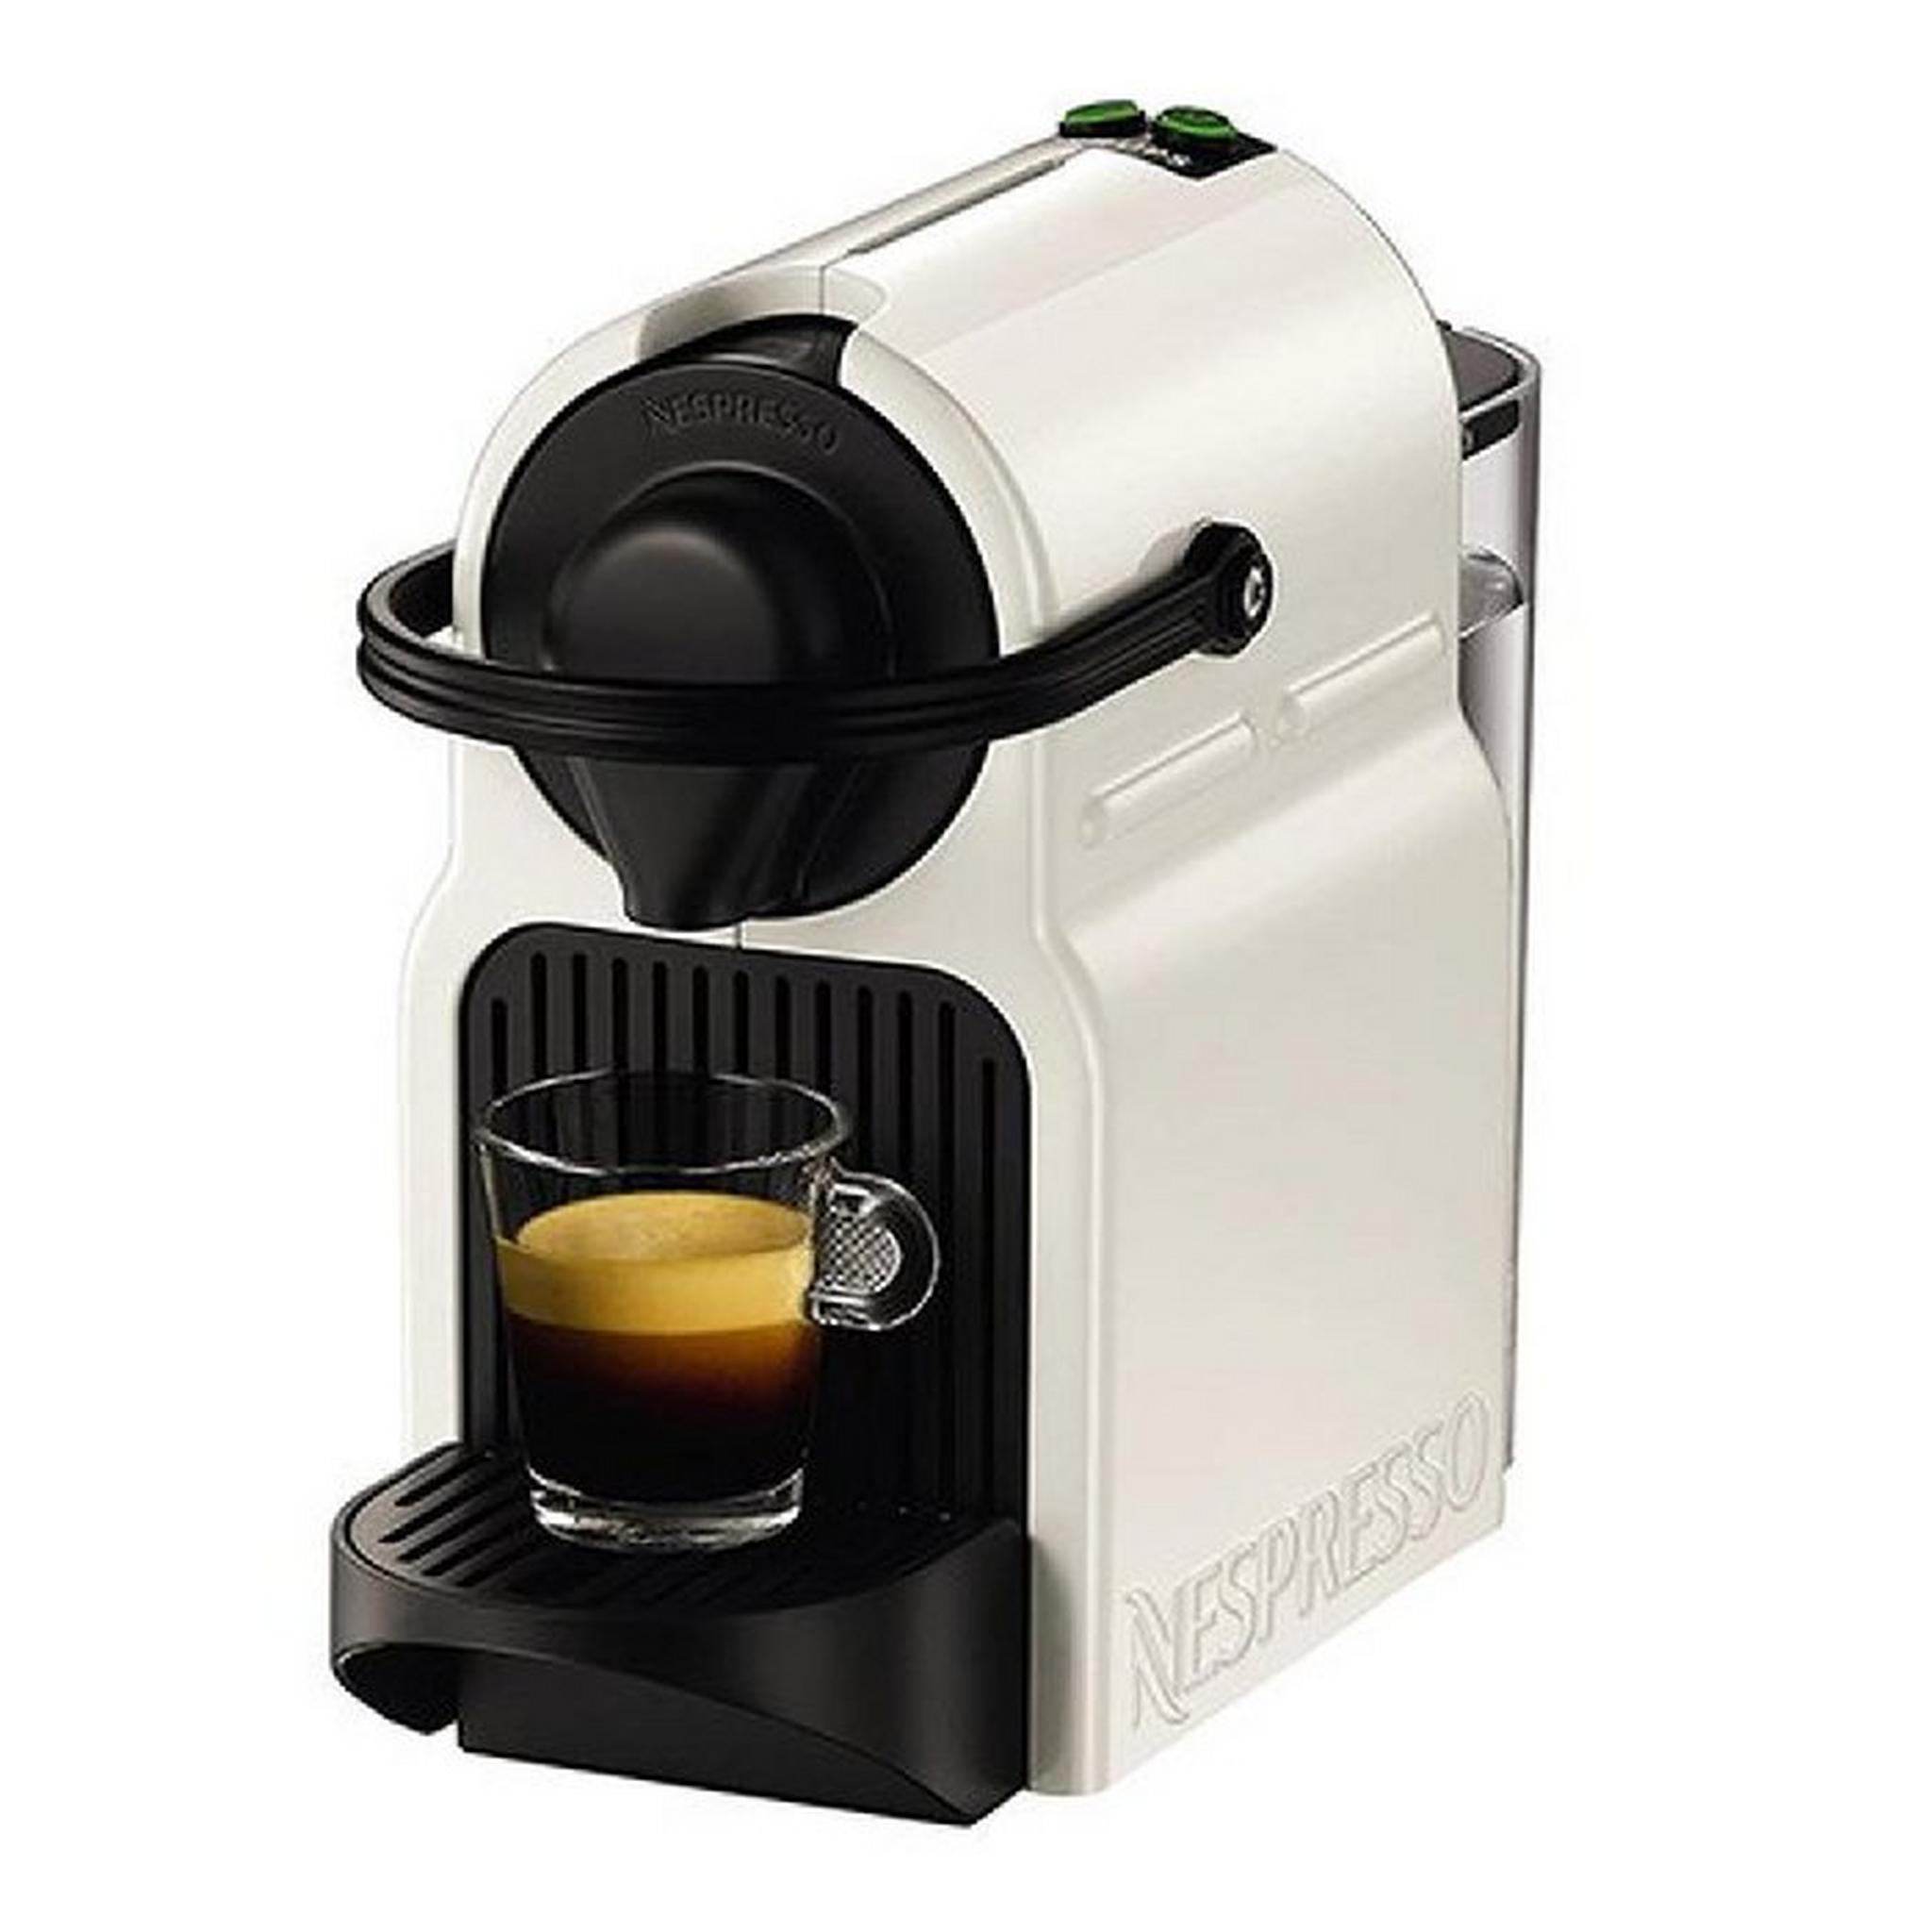 Nespresso Inissia Espresso Coffee Machine, 0.7L, C40 - White